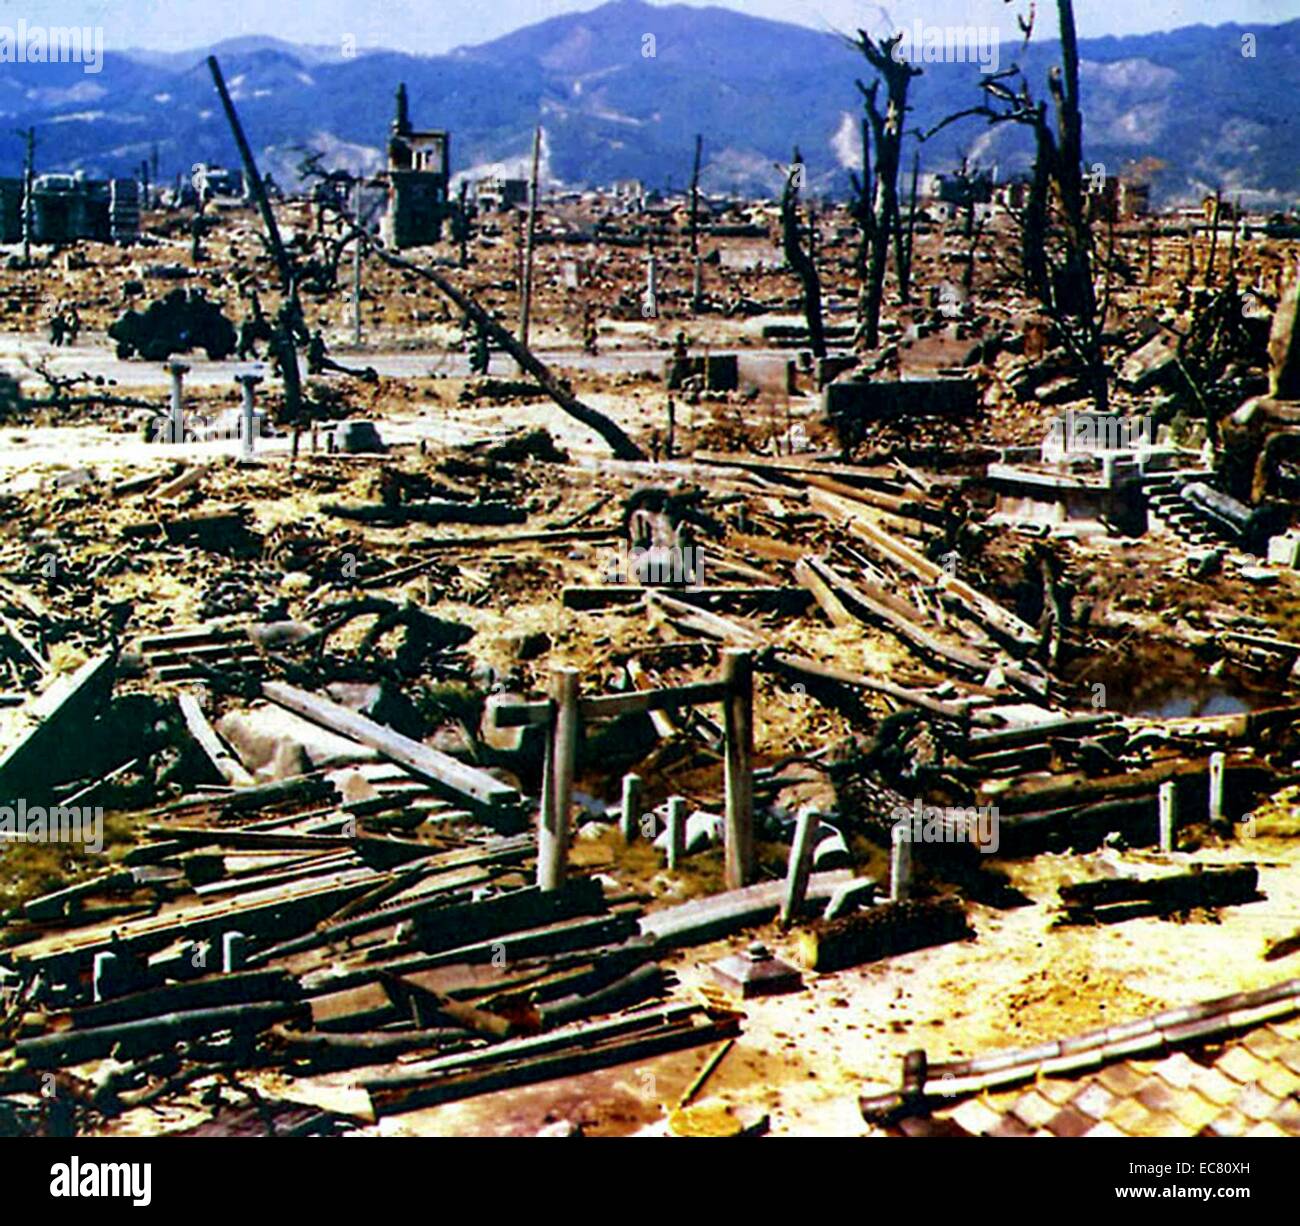 Nakajima Hon-machi war 100-700 Meter vom Zentrum der atomaren Explosion, die auf Hiroshima im Zweiten Weltkrieg entfesselt wurde. Die 'Little Boy' Atombombe direkt getötet, 80.000 Menschen beim ersten fallengelassen wurde aber Verletzungen und Strahlenwirkungen brachte die Gesamtzahl der Opfer bis zum Ende des folgenden sechs Monate 90,000-140,000. Die schockwelle aus dem Angriff völlig zerstört 69% der Gebäude der Stadt. Stockfoto